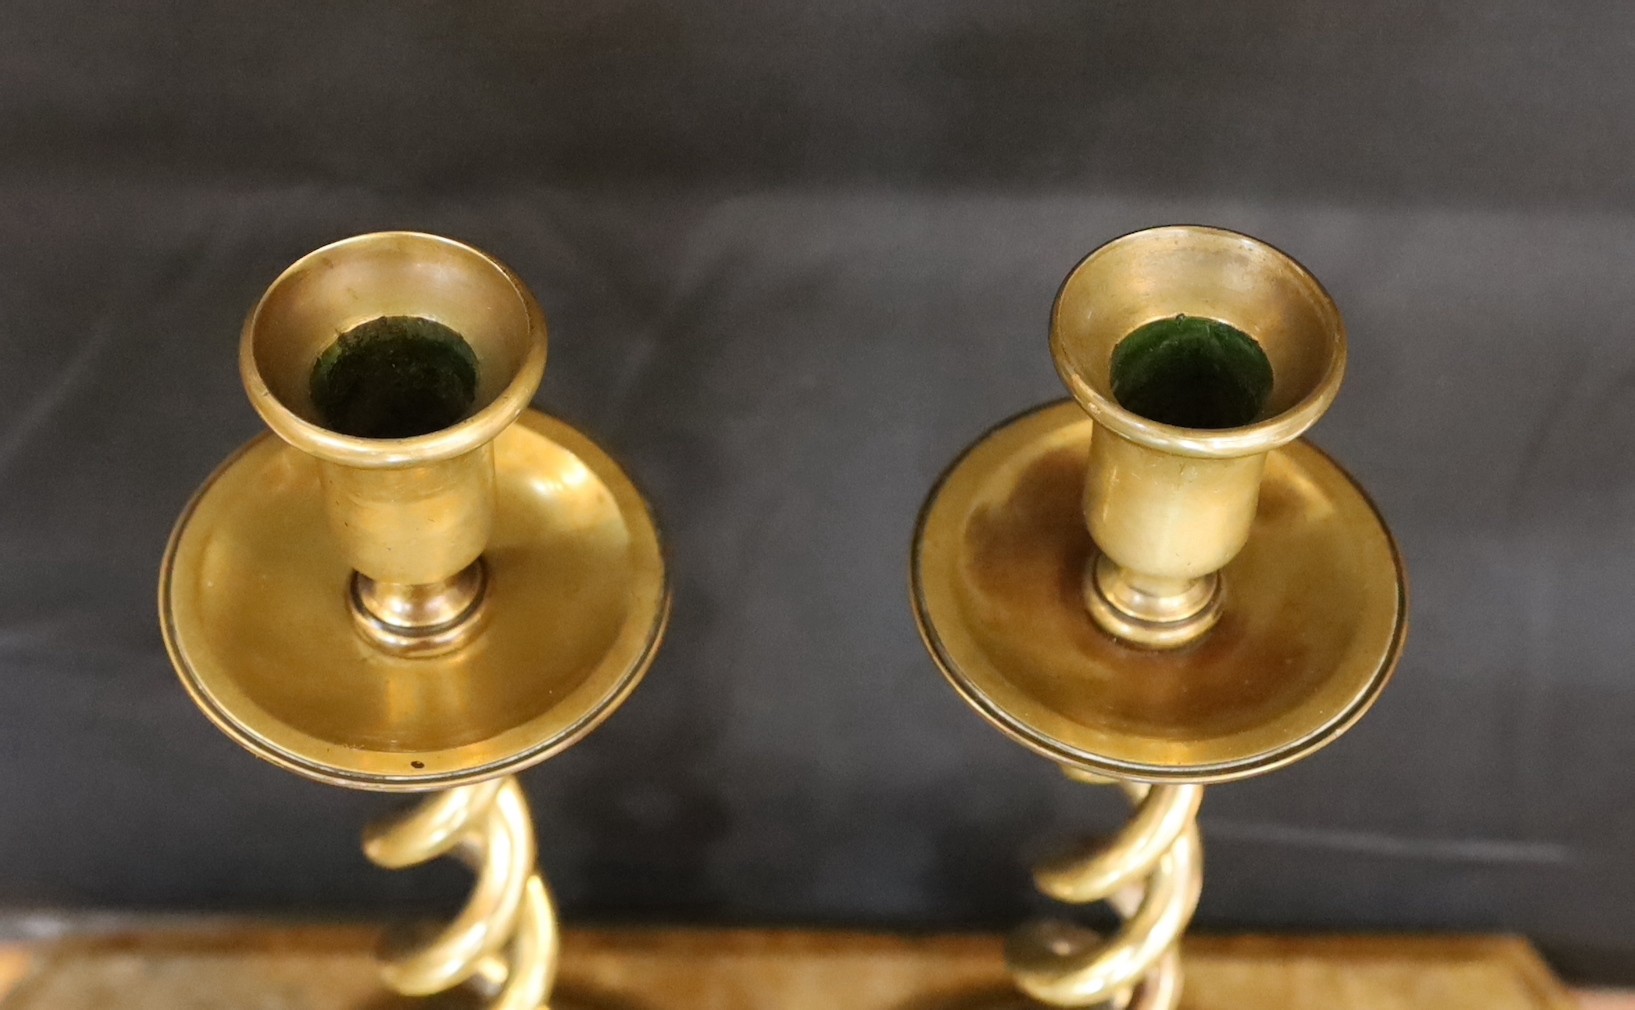 A pair of Victorian brass spiral twist candlesticks and a later seven light candelabrum, candlesticks 27cm. candelabrum 32cm